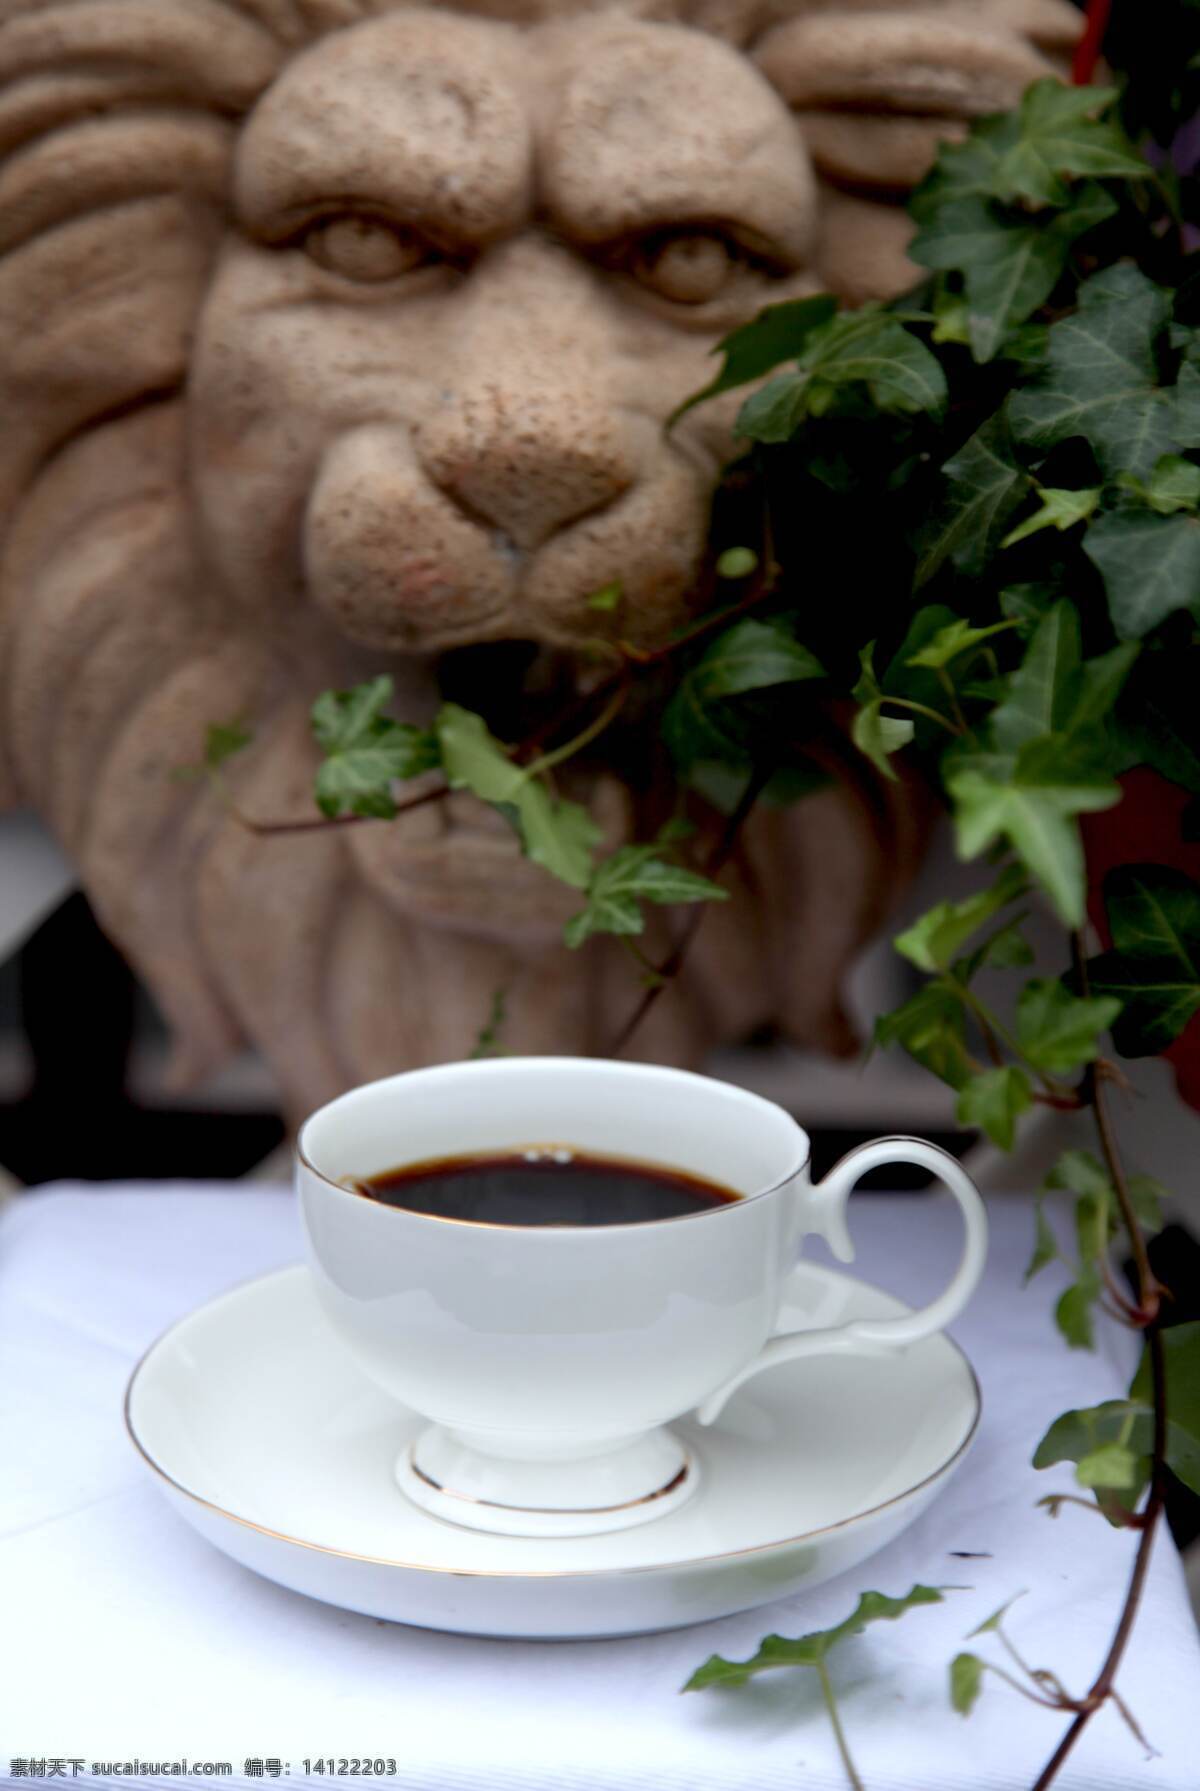 咖啡免费下载 咖啡 咖啡杯 蓝山咖啡 狮子 蓝山 风景 生活 旅游餐饮